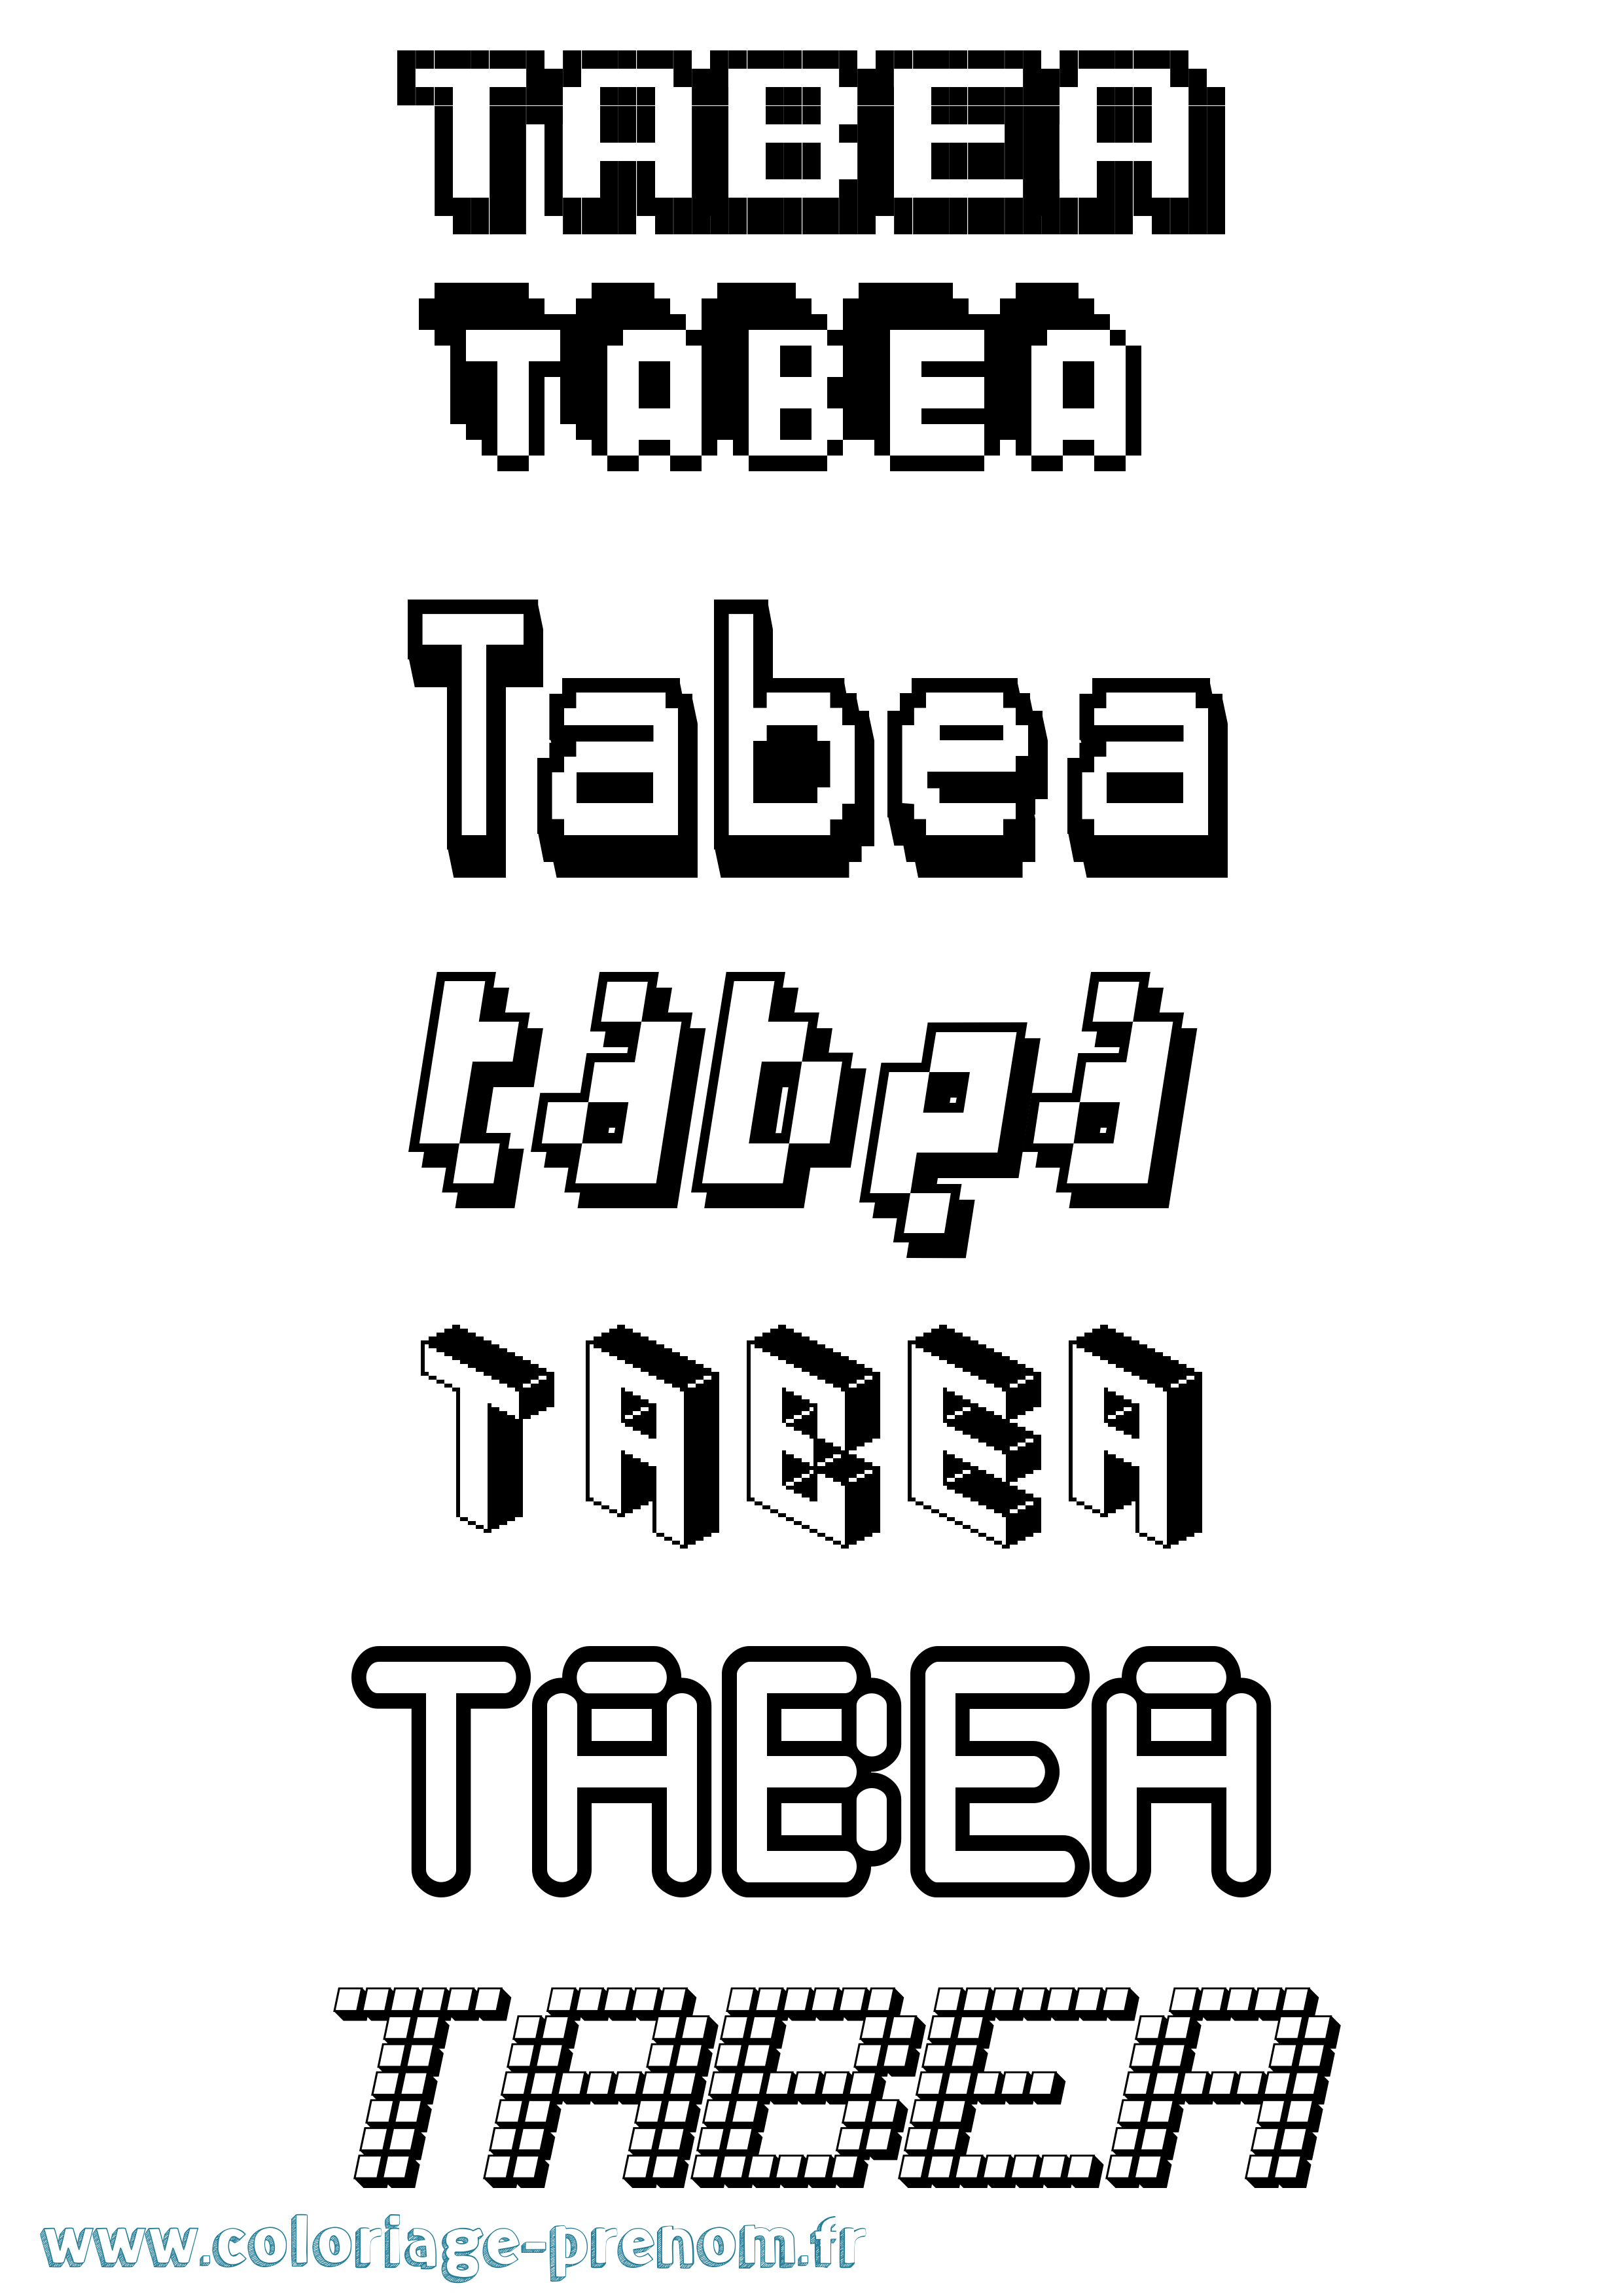 Coloriage prénom Tabea Pixel